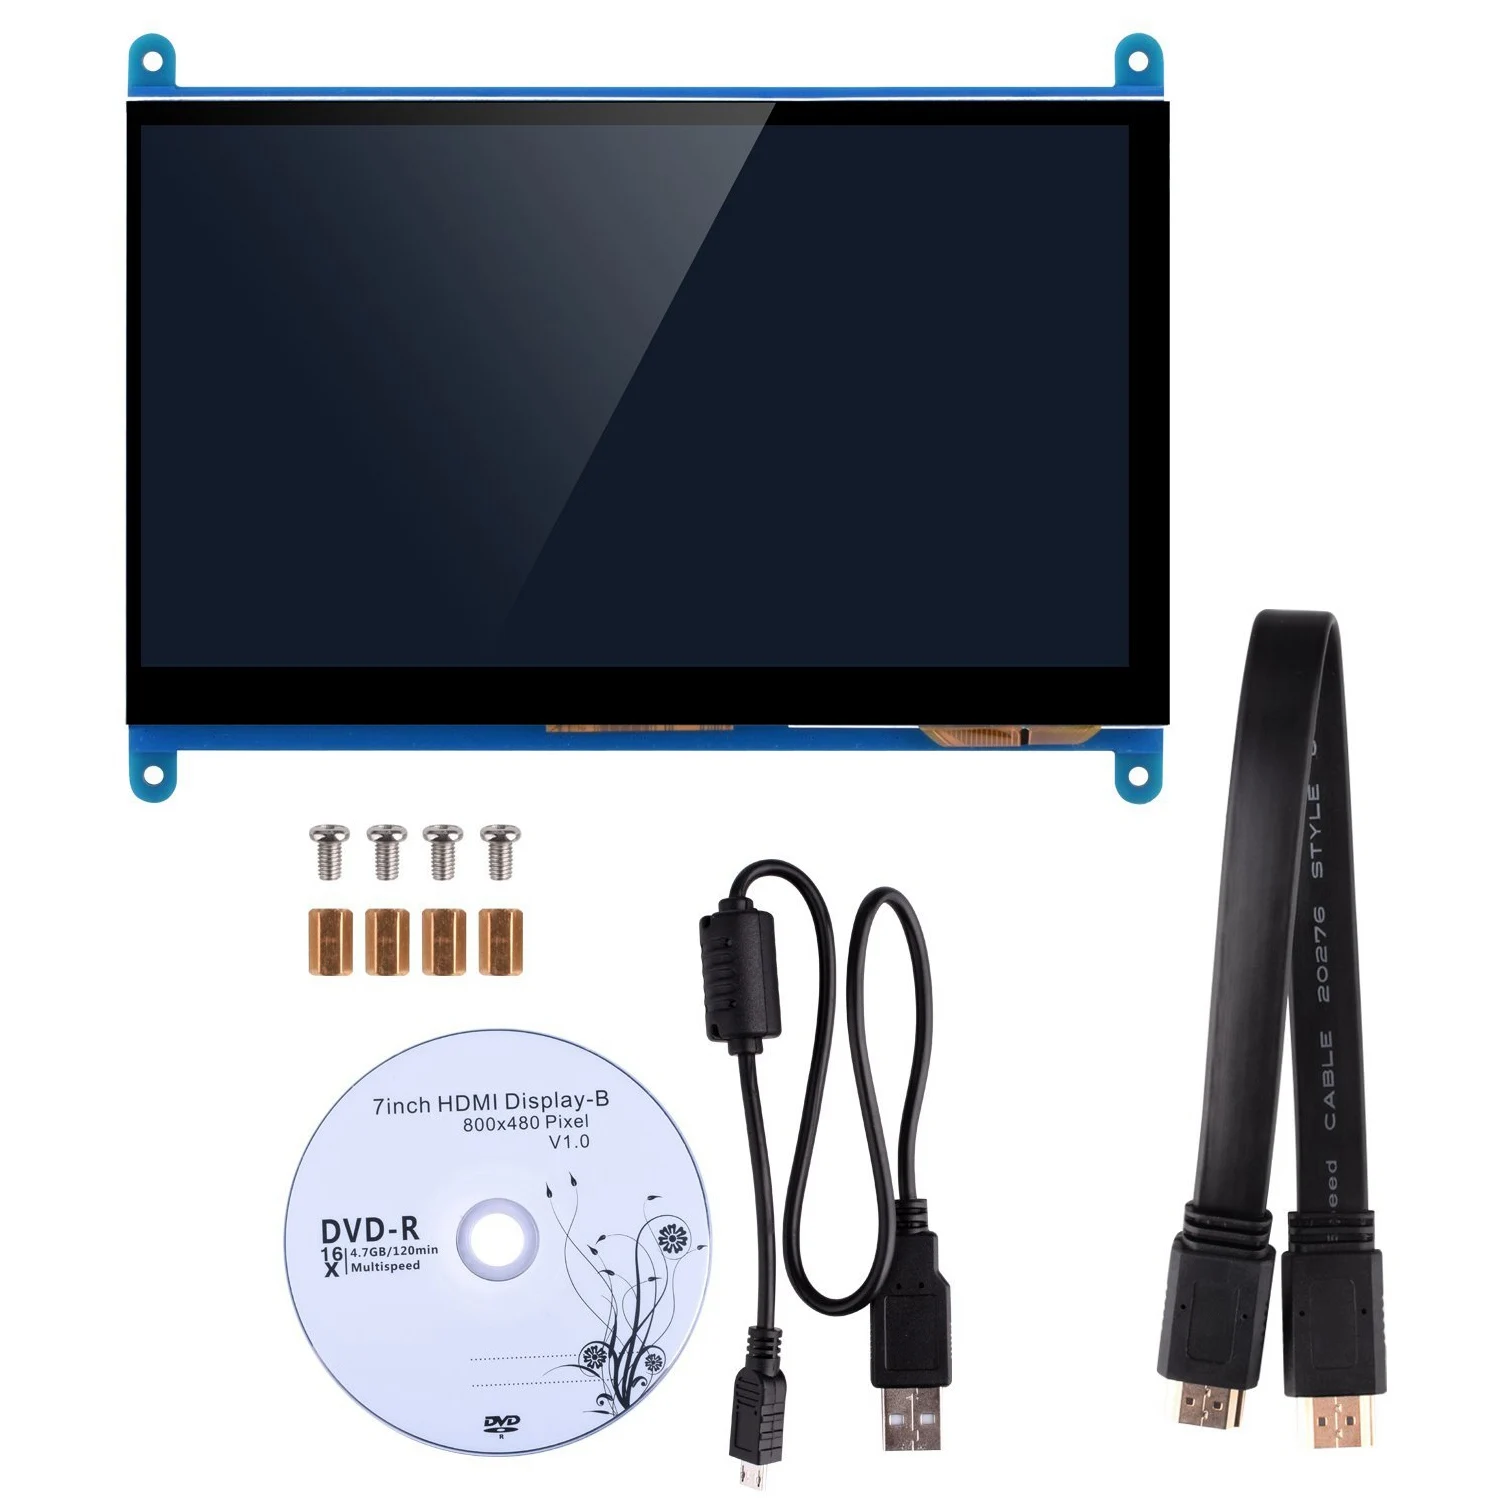 7 дюймов емкостный сенсорный экран Сенсорный экран на тонкопленочных транзисторах на тонкоплёночных транзисторах ЖК-дисплей Дисплей HDMI модуль 800x480 для Raspberry Pi 3 2 Модель B и RPi 1 B+ BB Черный PC вар